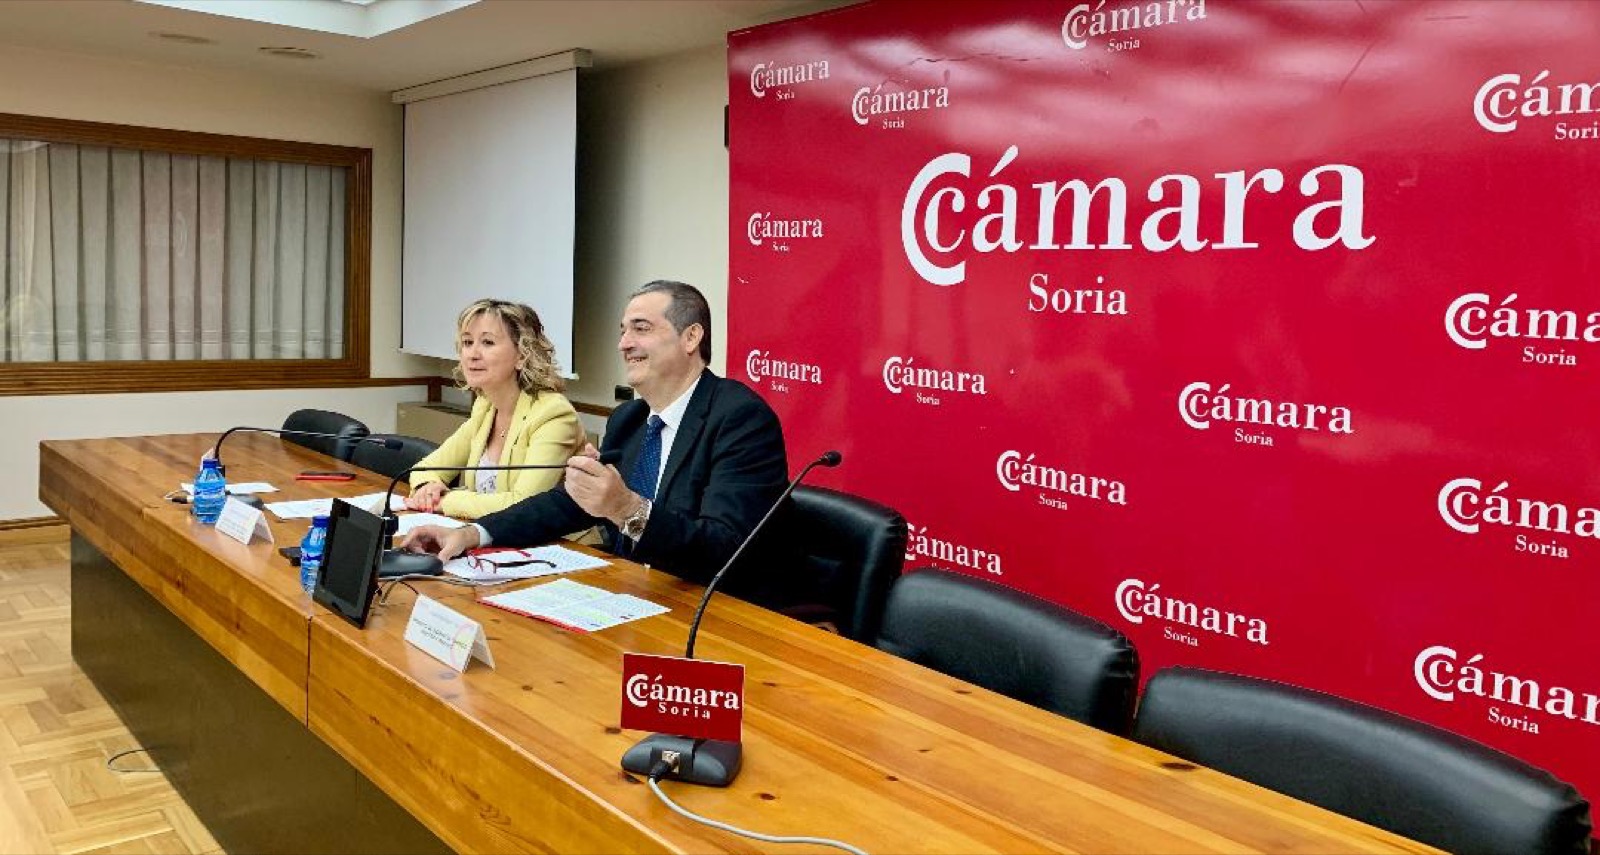 La Cámara hace balance de su primer año con Santamaría al frente, con el objetivo cumplido de la creación de 102 empresas